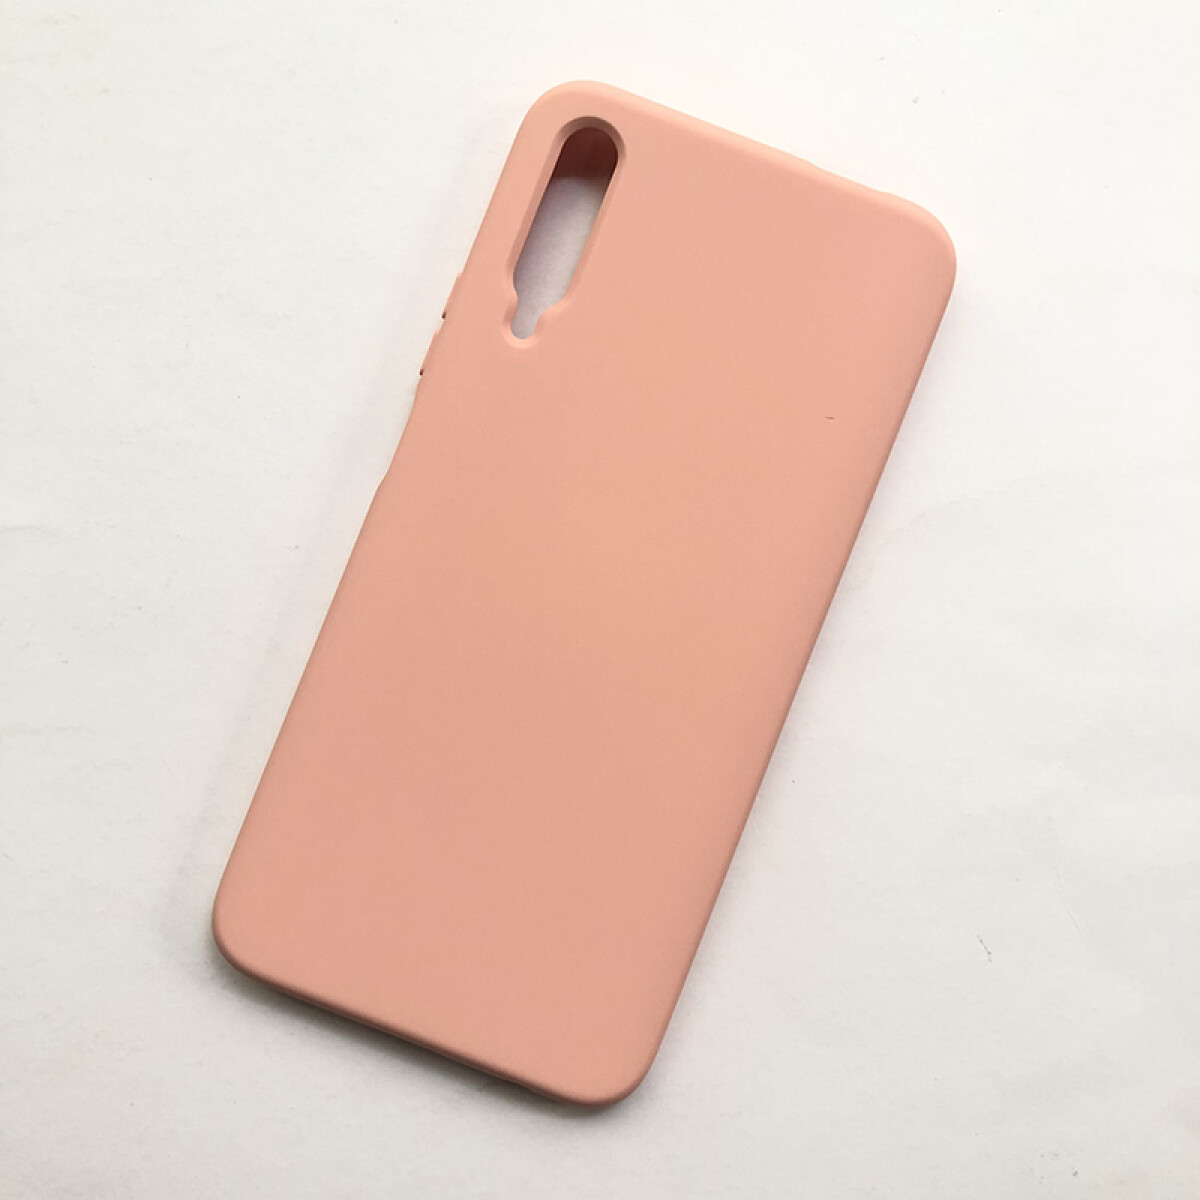 Protector de silicona para Huawei Y9s rosado 